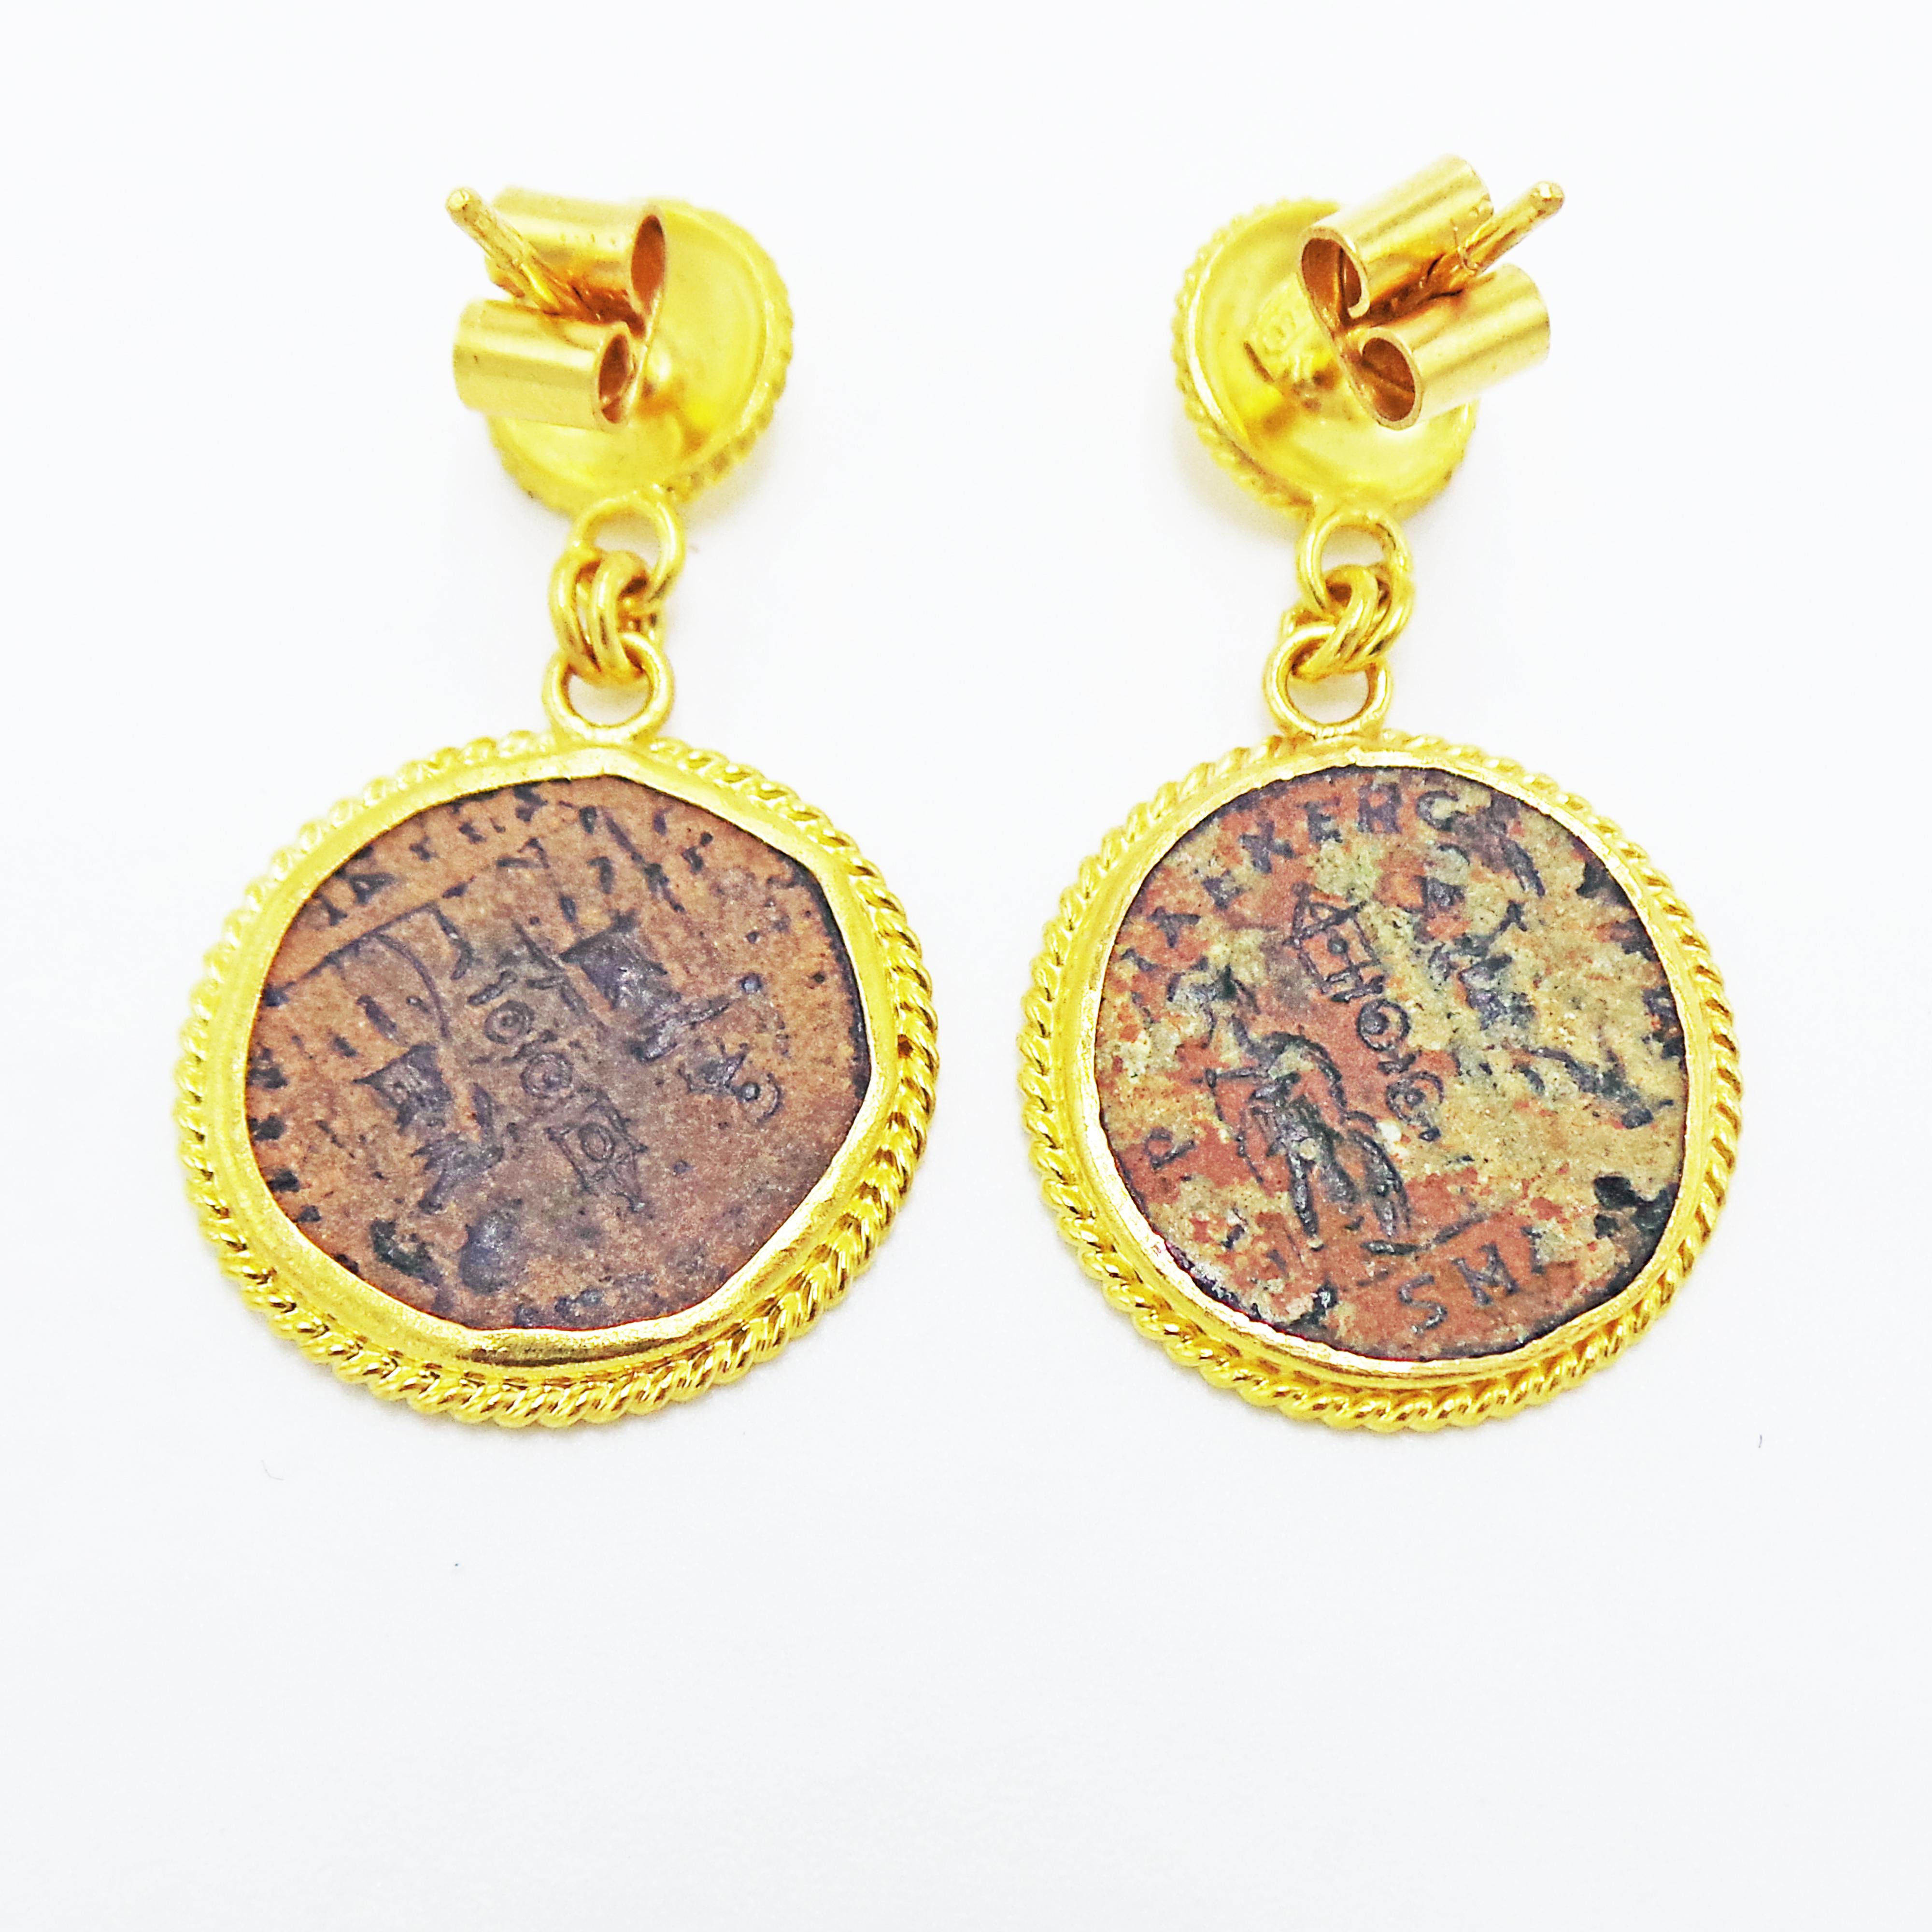 D'authentiques pièces de monnaie romaines en bronze (Constantius II, 337-361 ADS) sont serties dans des boucles d'oreilles pendantes en or jaune 22k.